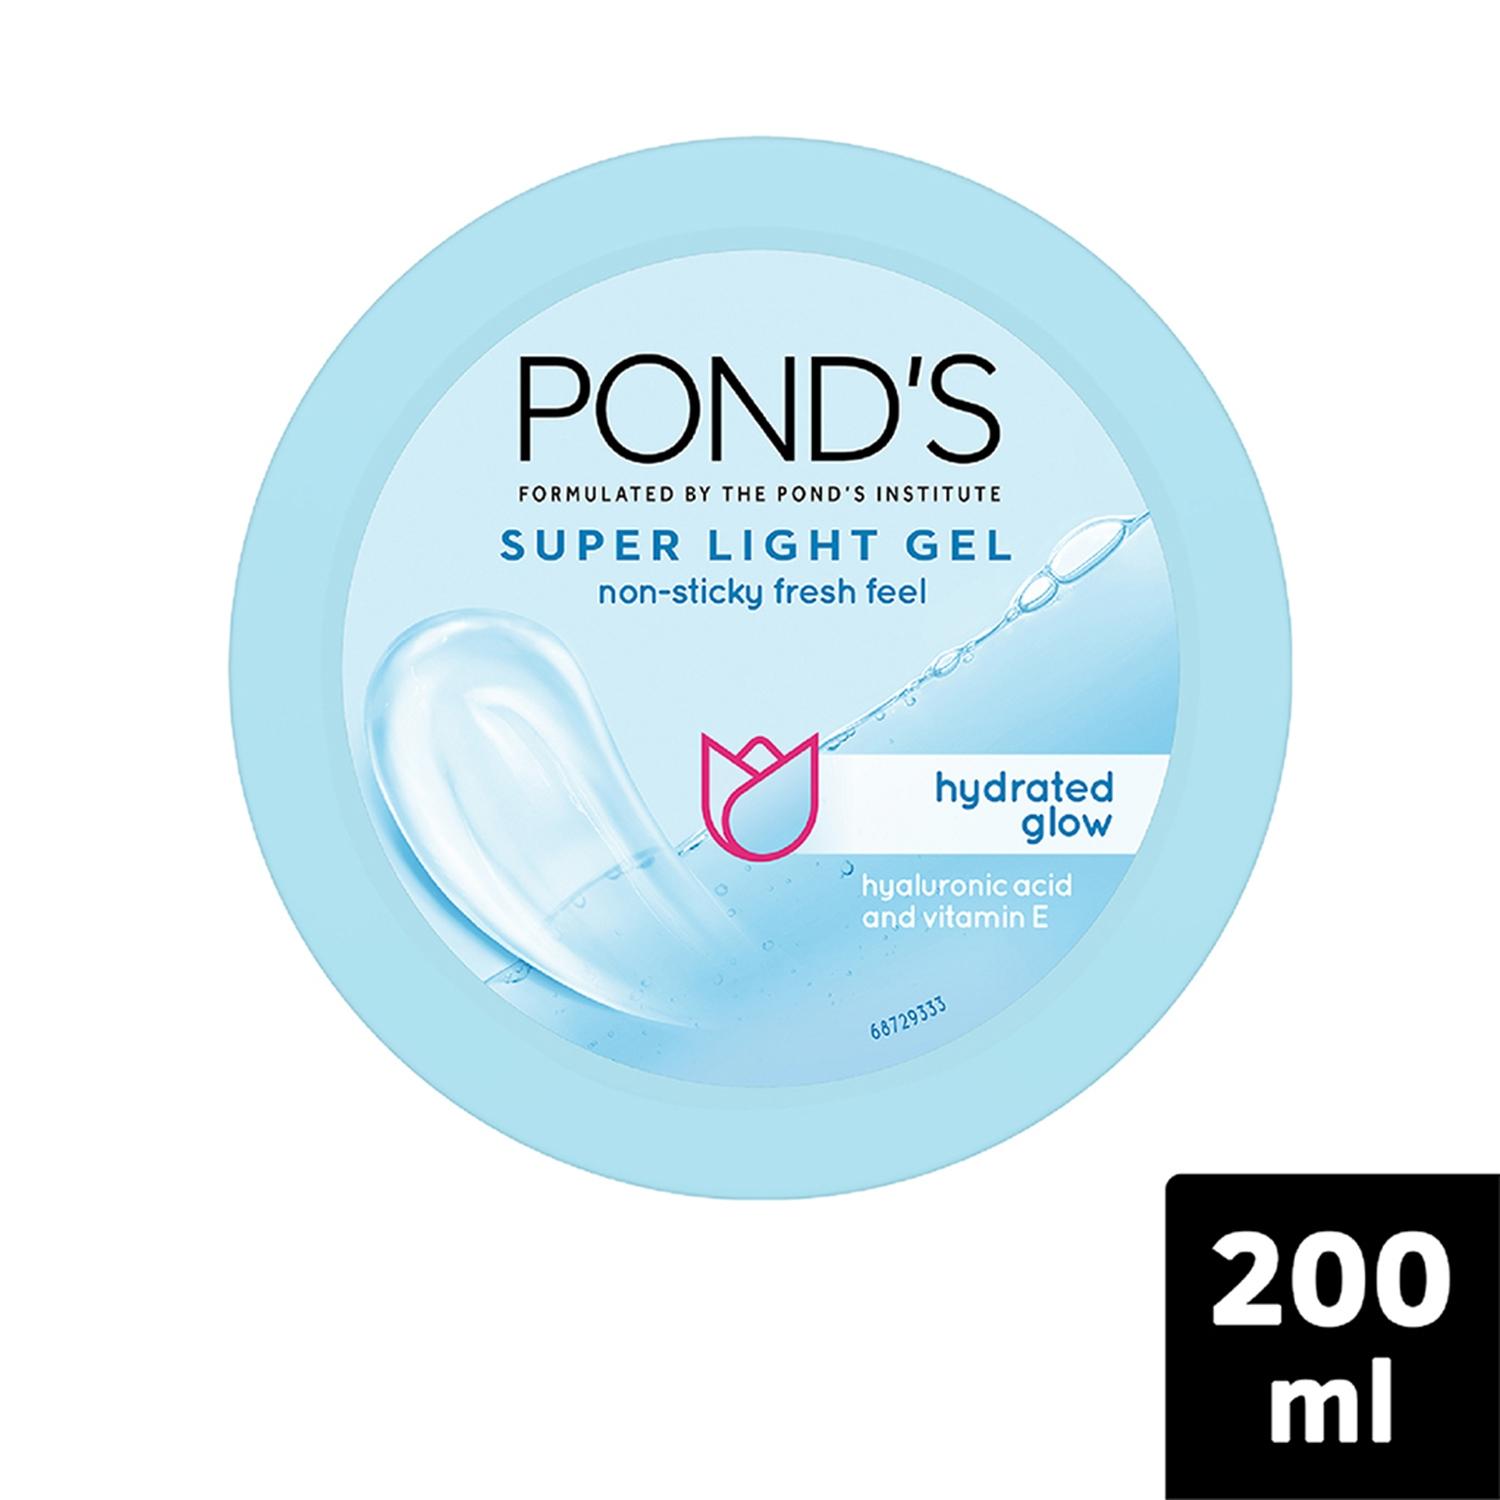 pond's super light gel oil free moisturizer with hyaluronic acid & vitamin e (200ml)